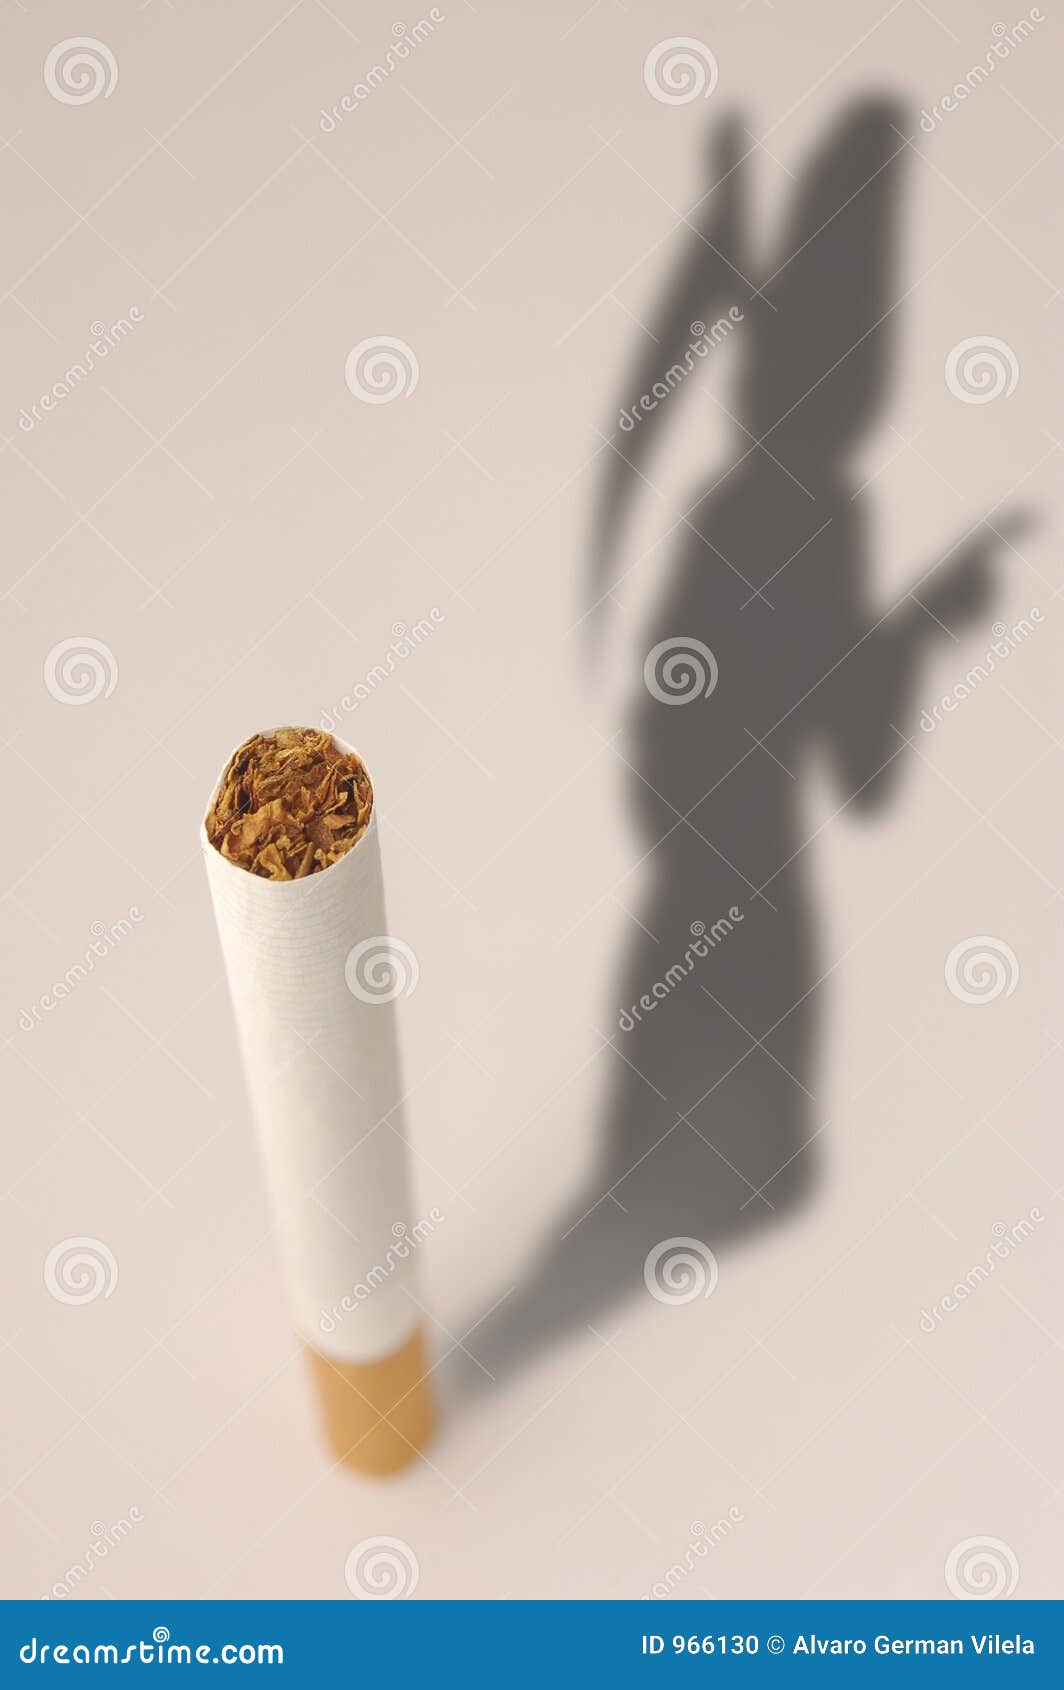 Люди умирают от сигарет